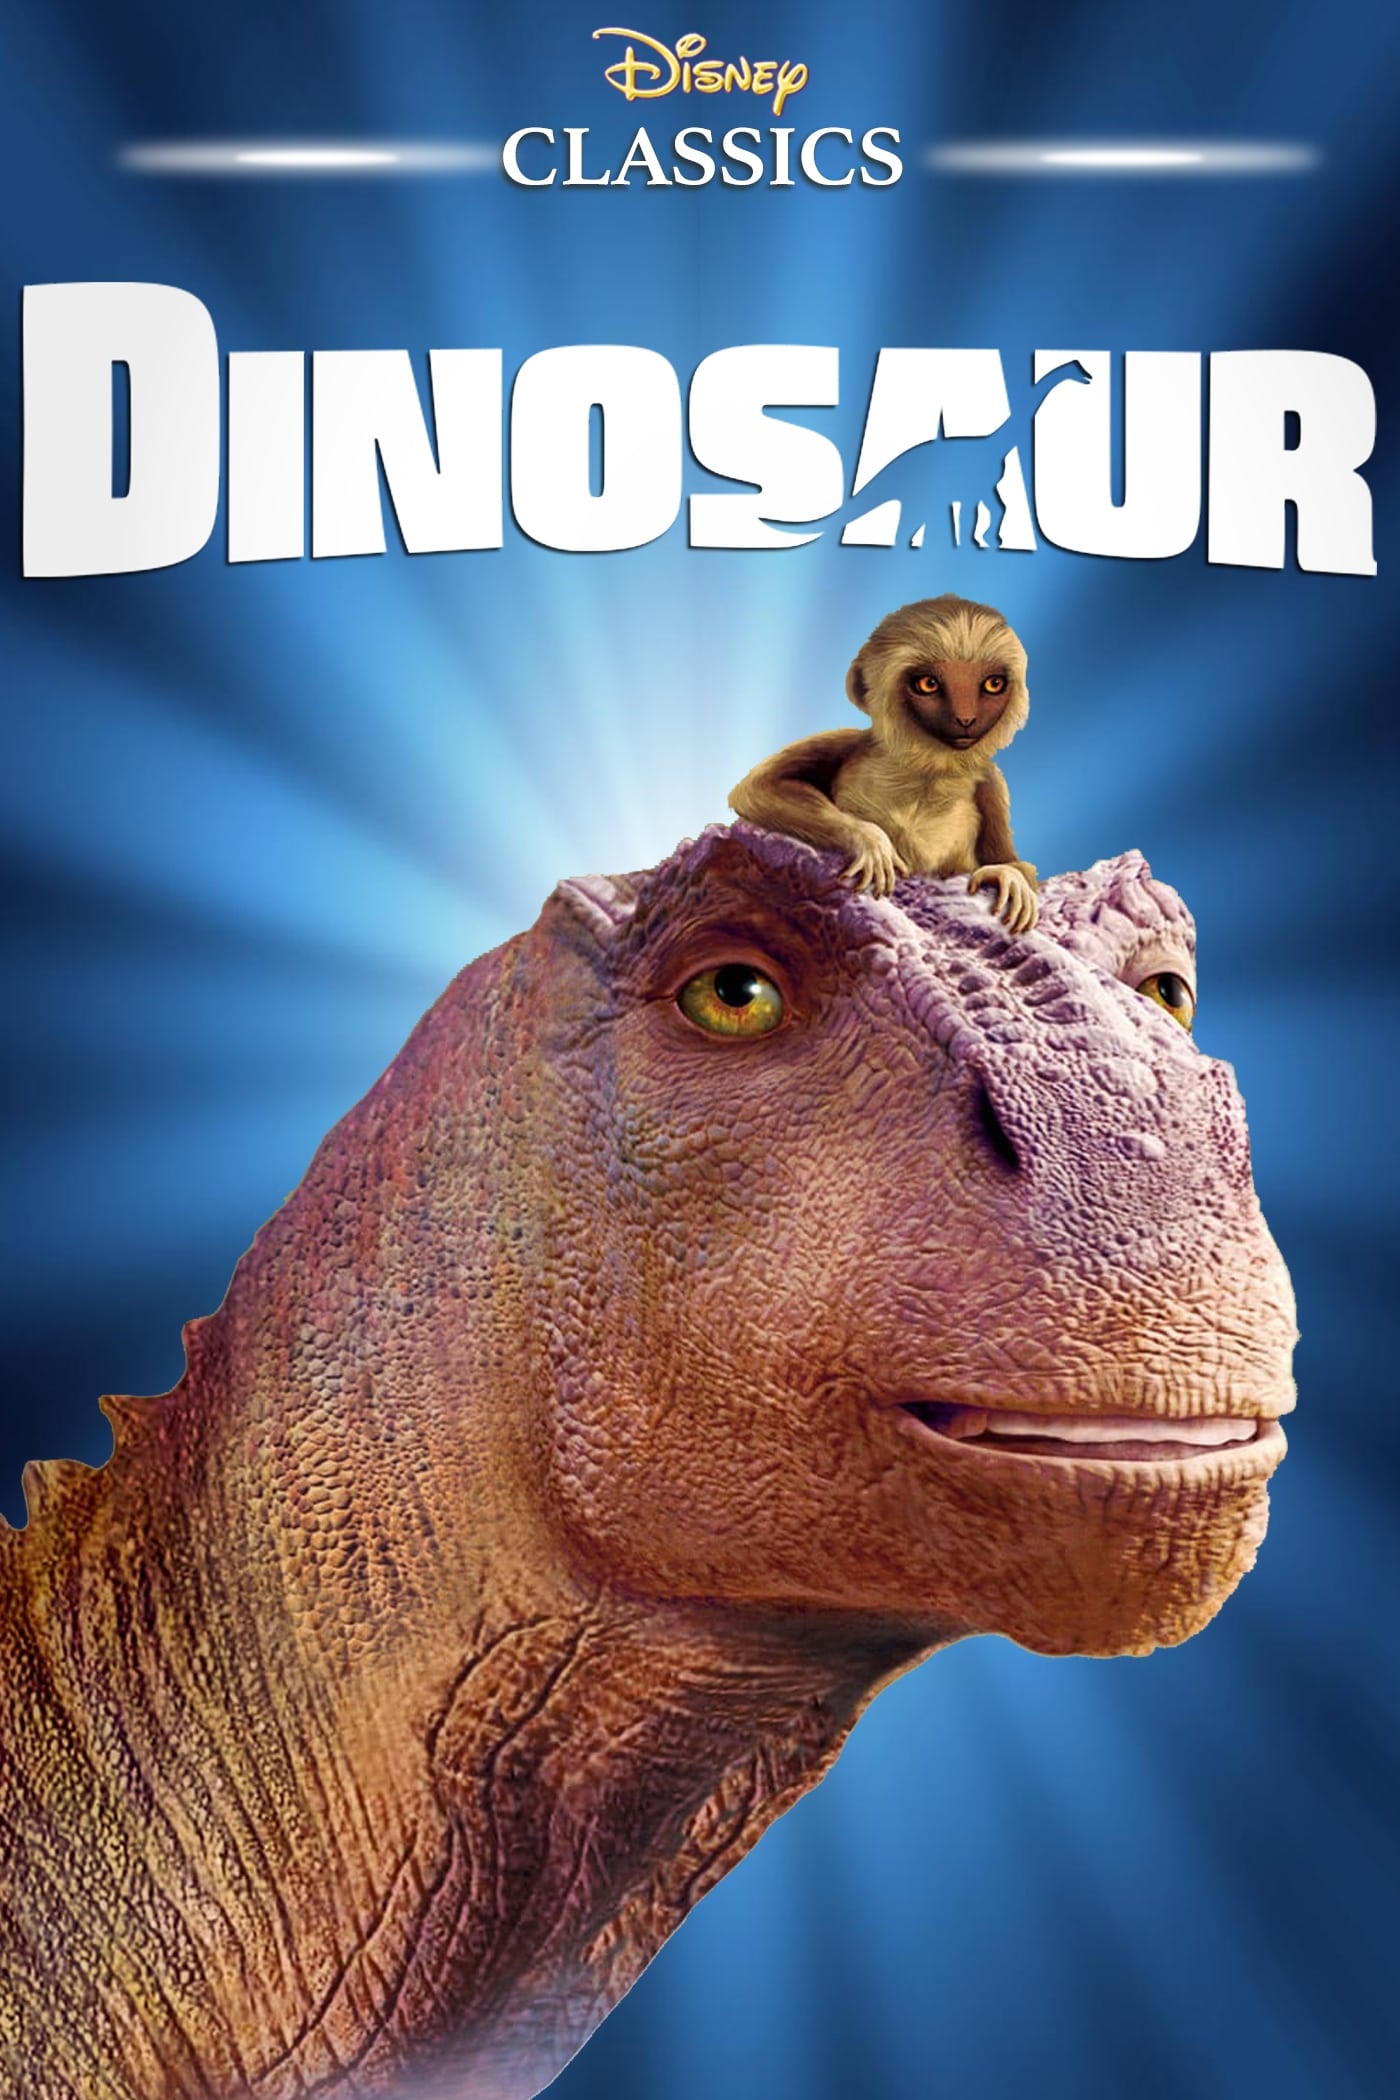  Dinosaur  2000  Posters  The Movie Database TMDb 